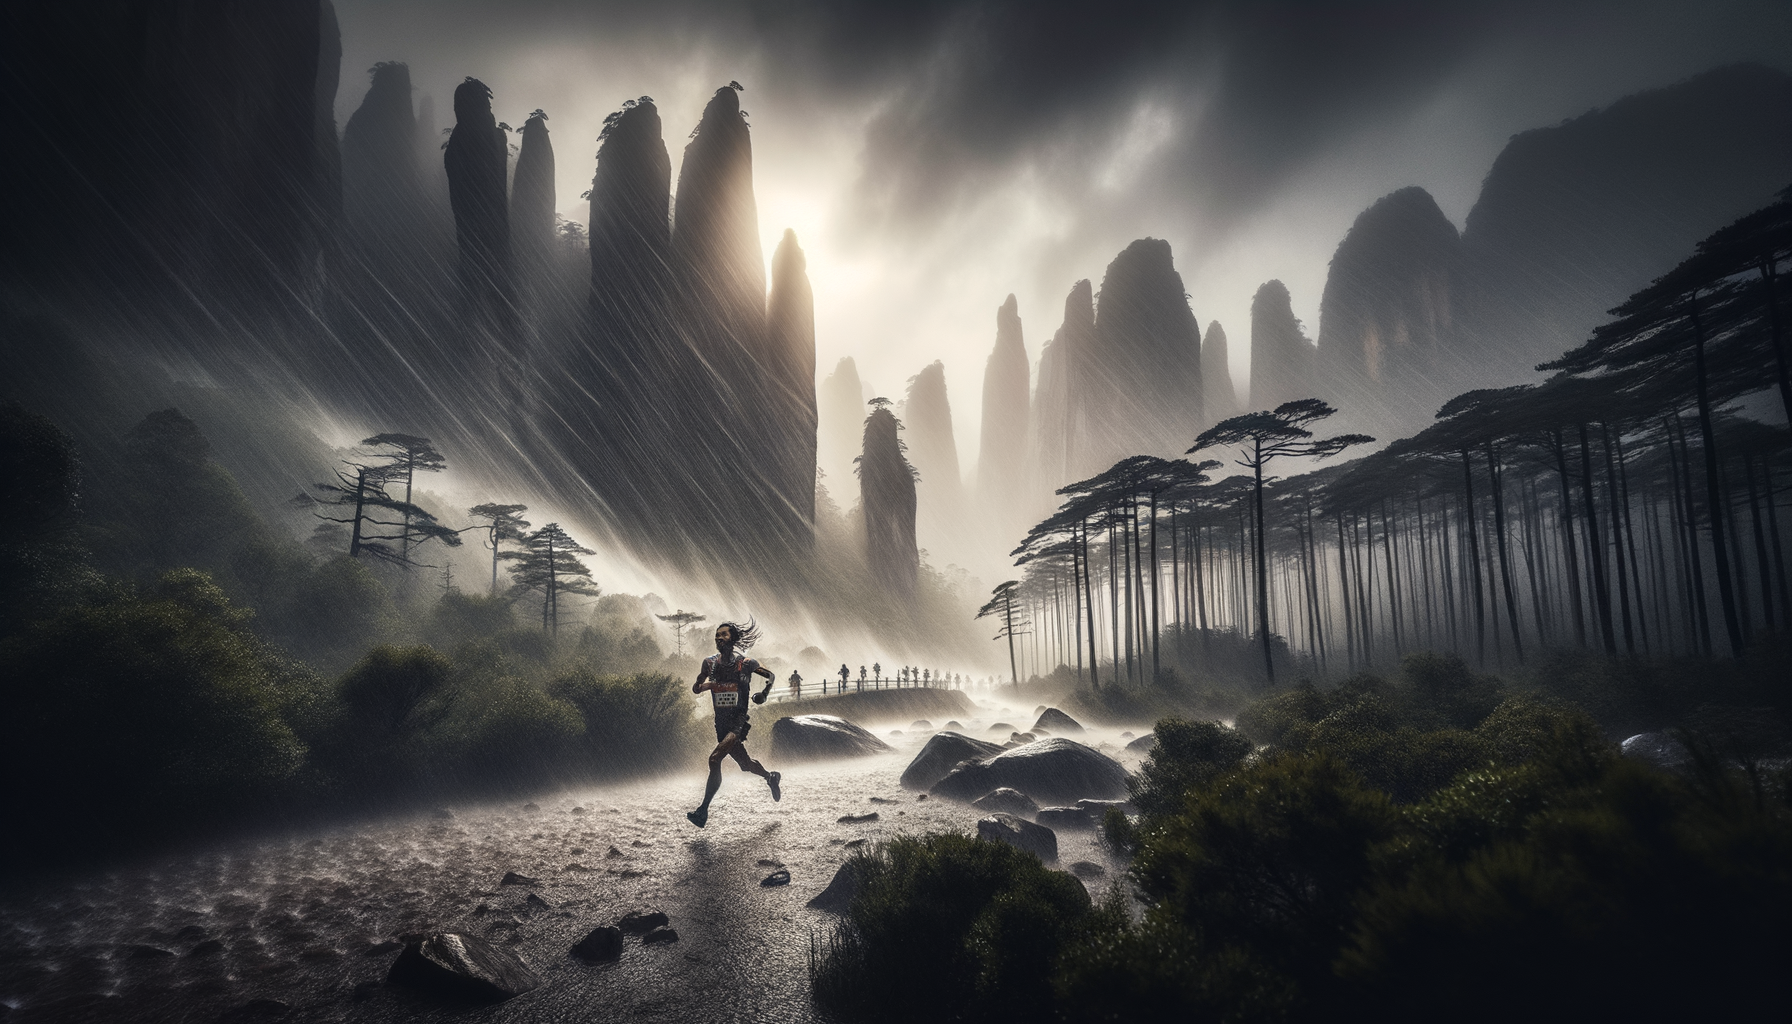 В Каменном лесу Хуанхэ, Китай ультрамарафон пересеченной местности, дождь и сильный ветер, бежит через ветер и дождь один бегун